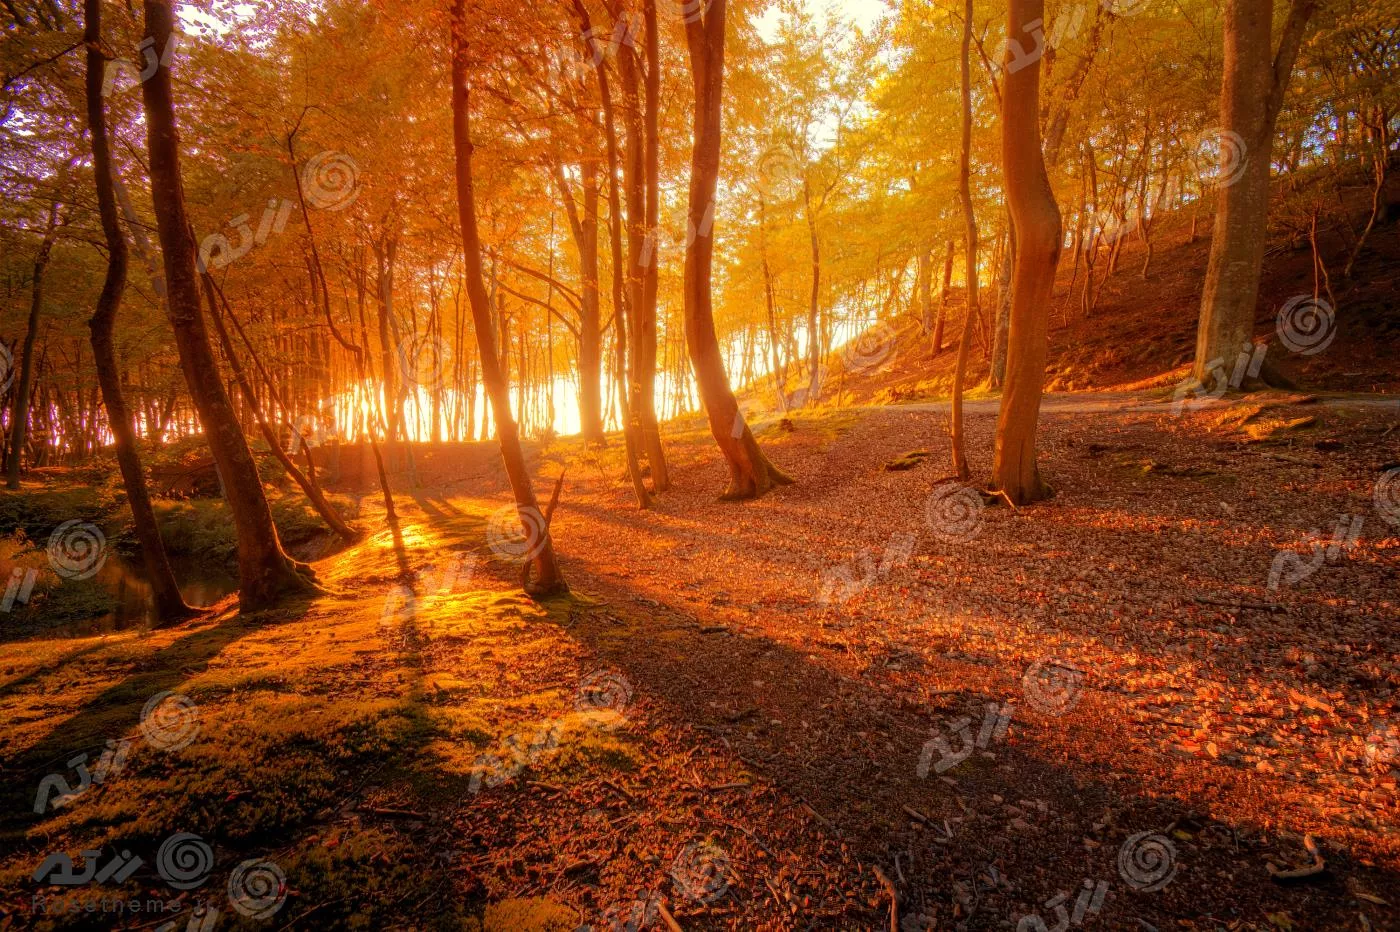 عکس با کیفیت از غروب پاییز در جنگل مناسب برای استفاده به عنوان تصویر زمینه 22030